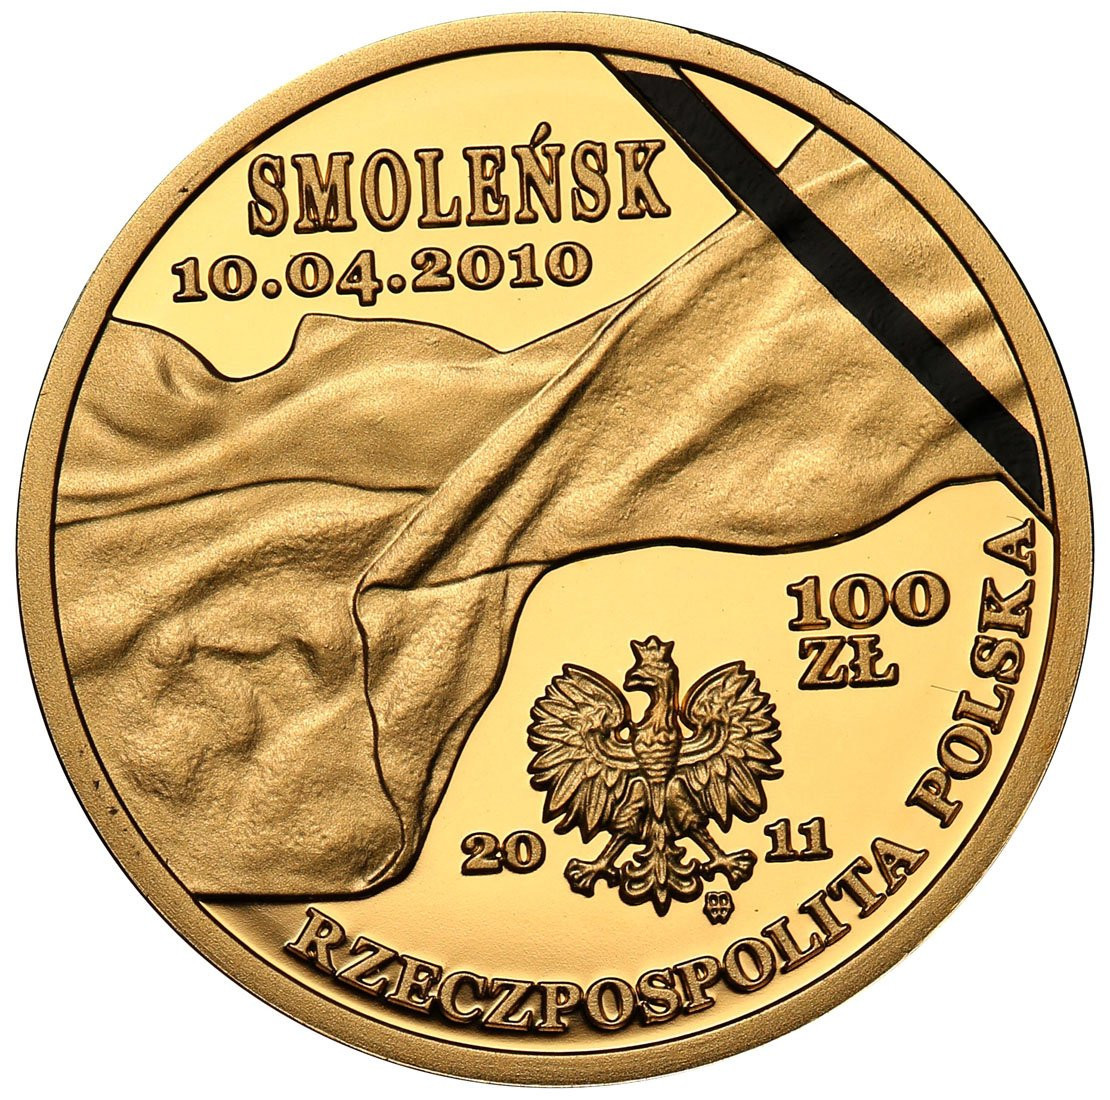 Polska. 100 złotych 2011 Smoleńsk - Para prezydencka Kaczyńscy